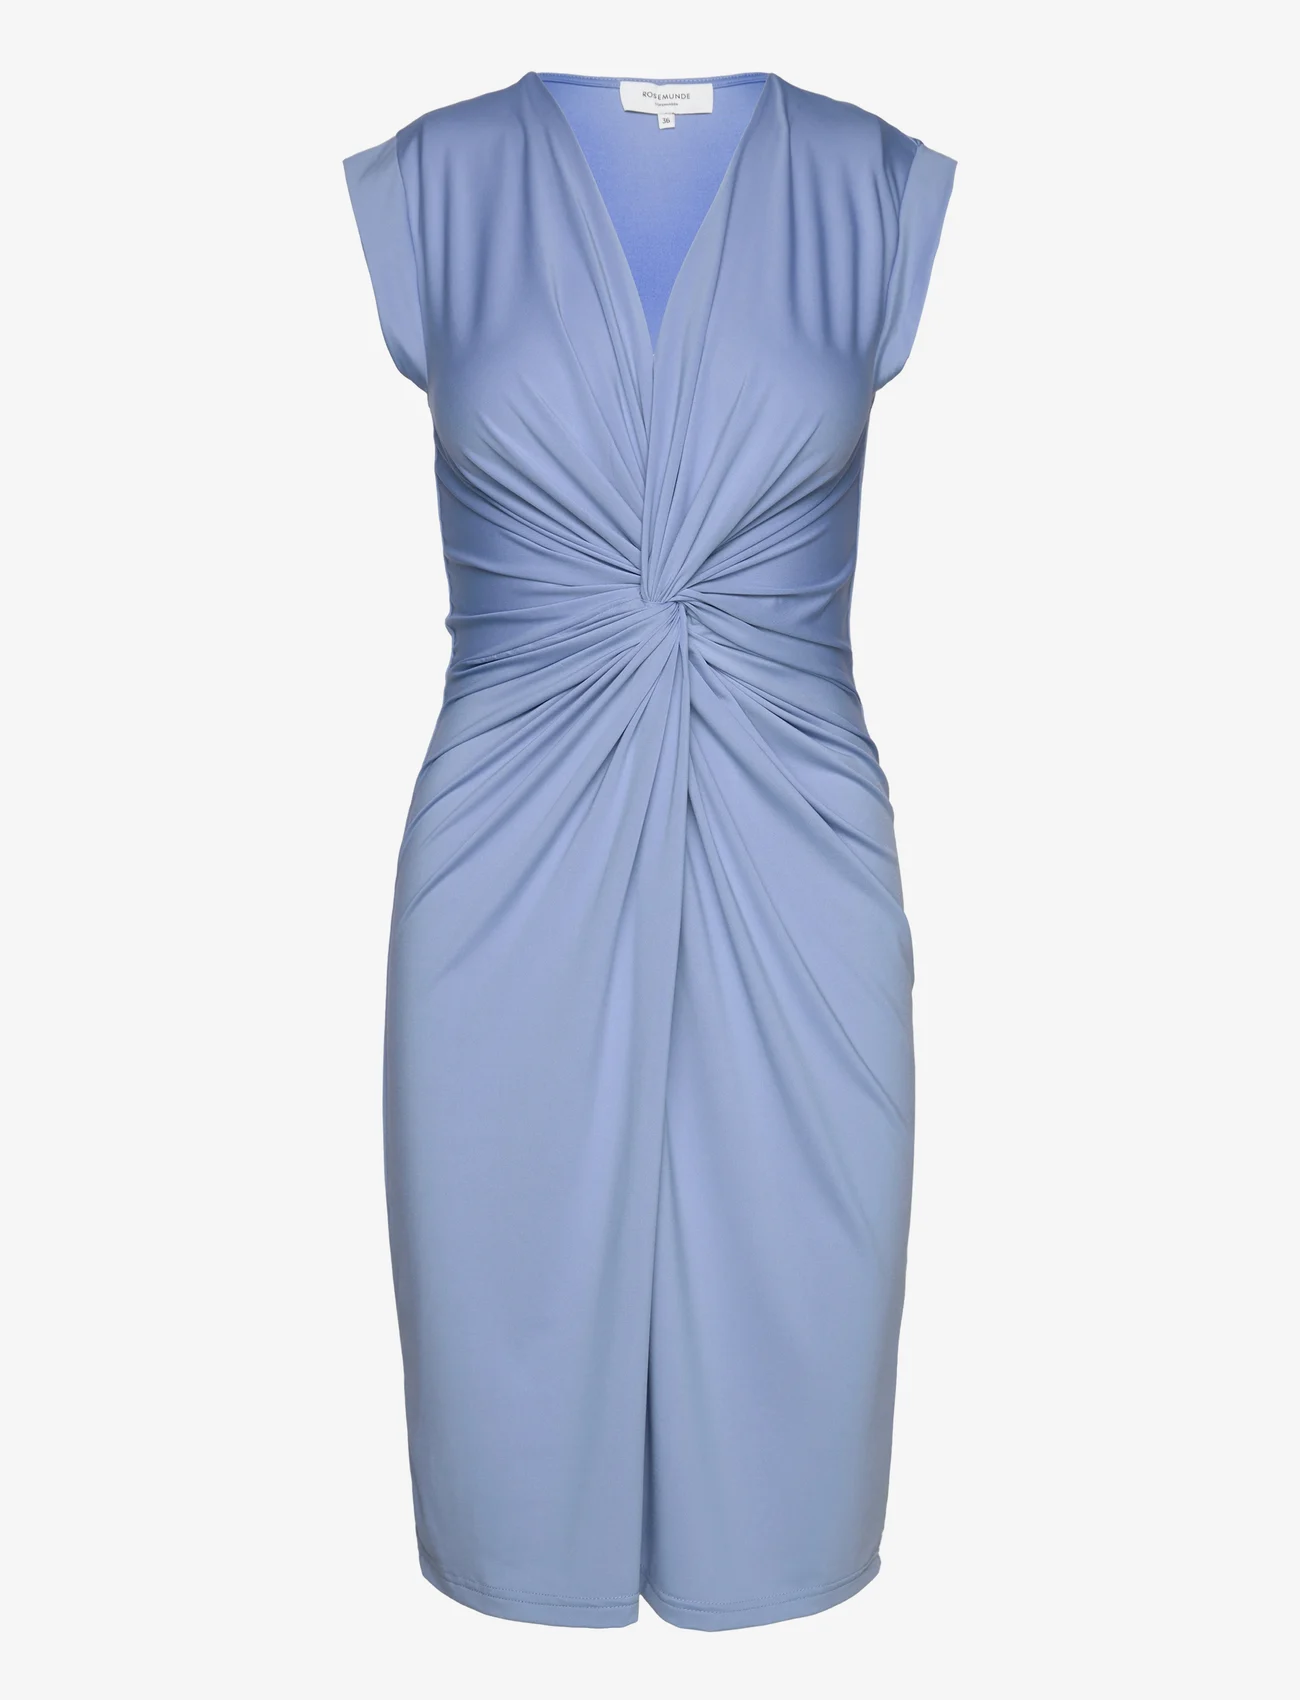 Rosemunde - Dress - festklær til outlet-priser - blue allure - 0